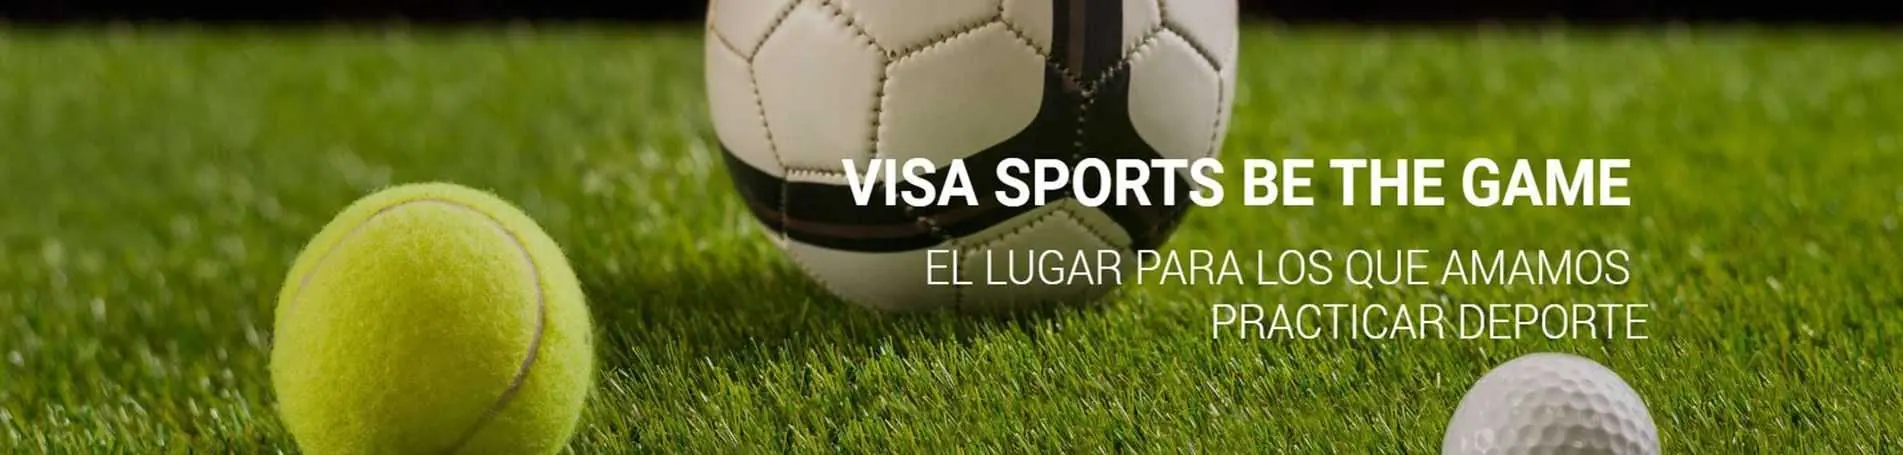 Nueva web para Visa Sports